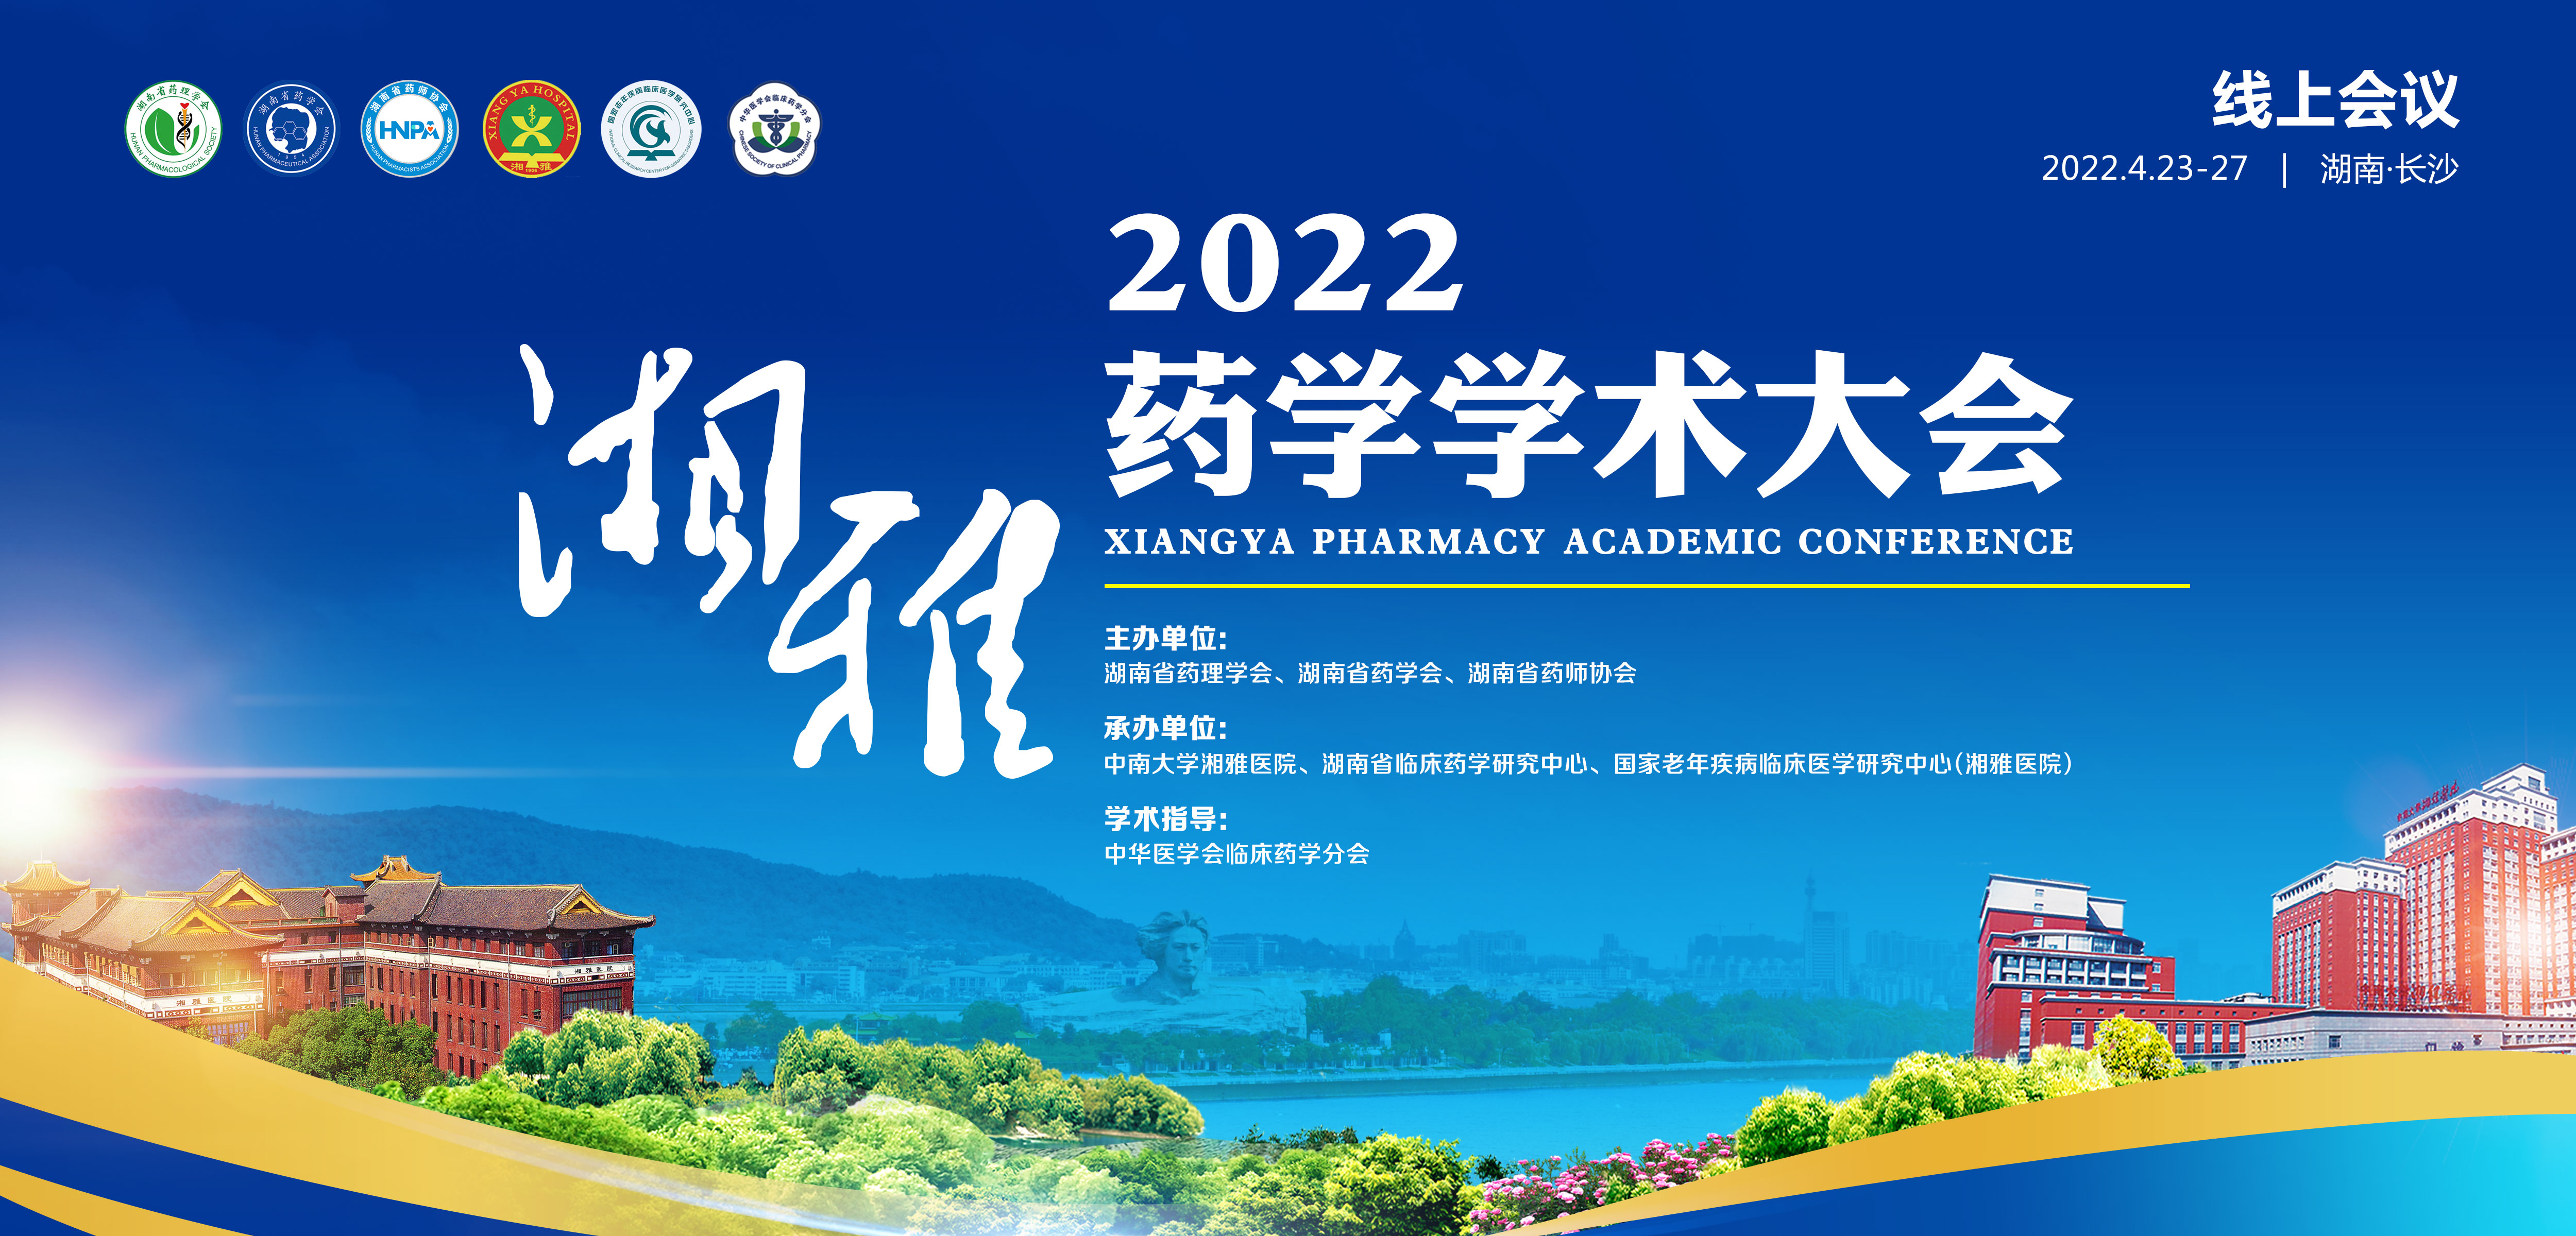 2022 湘雅药学学术大会